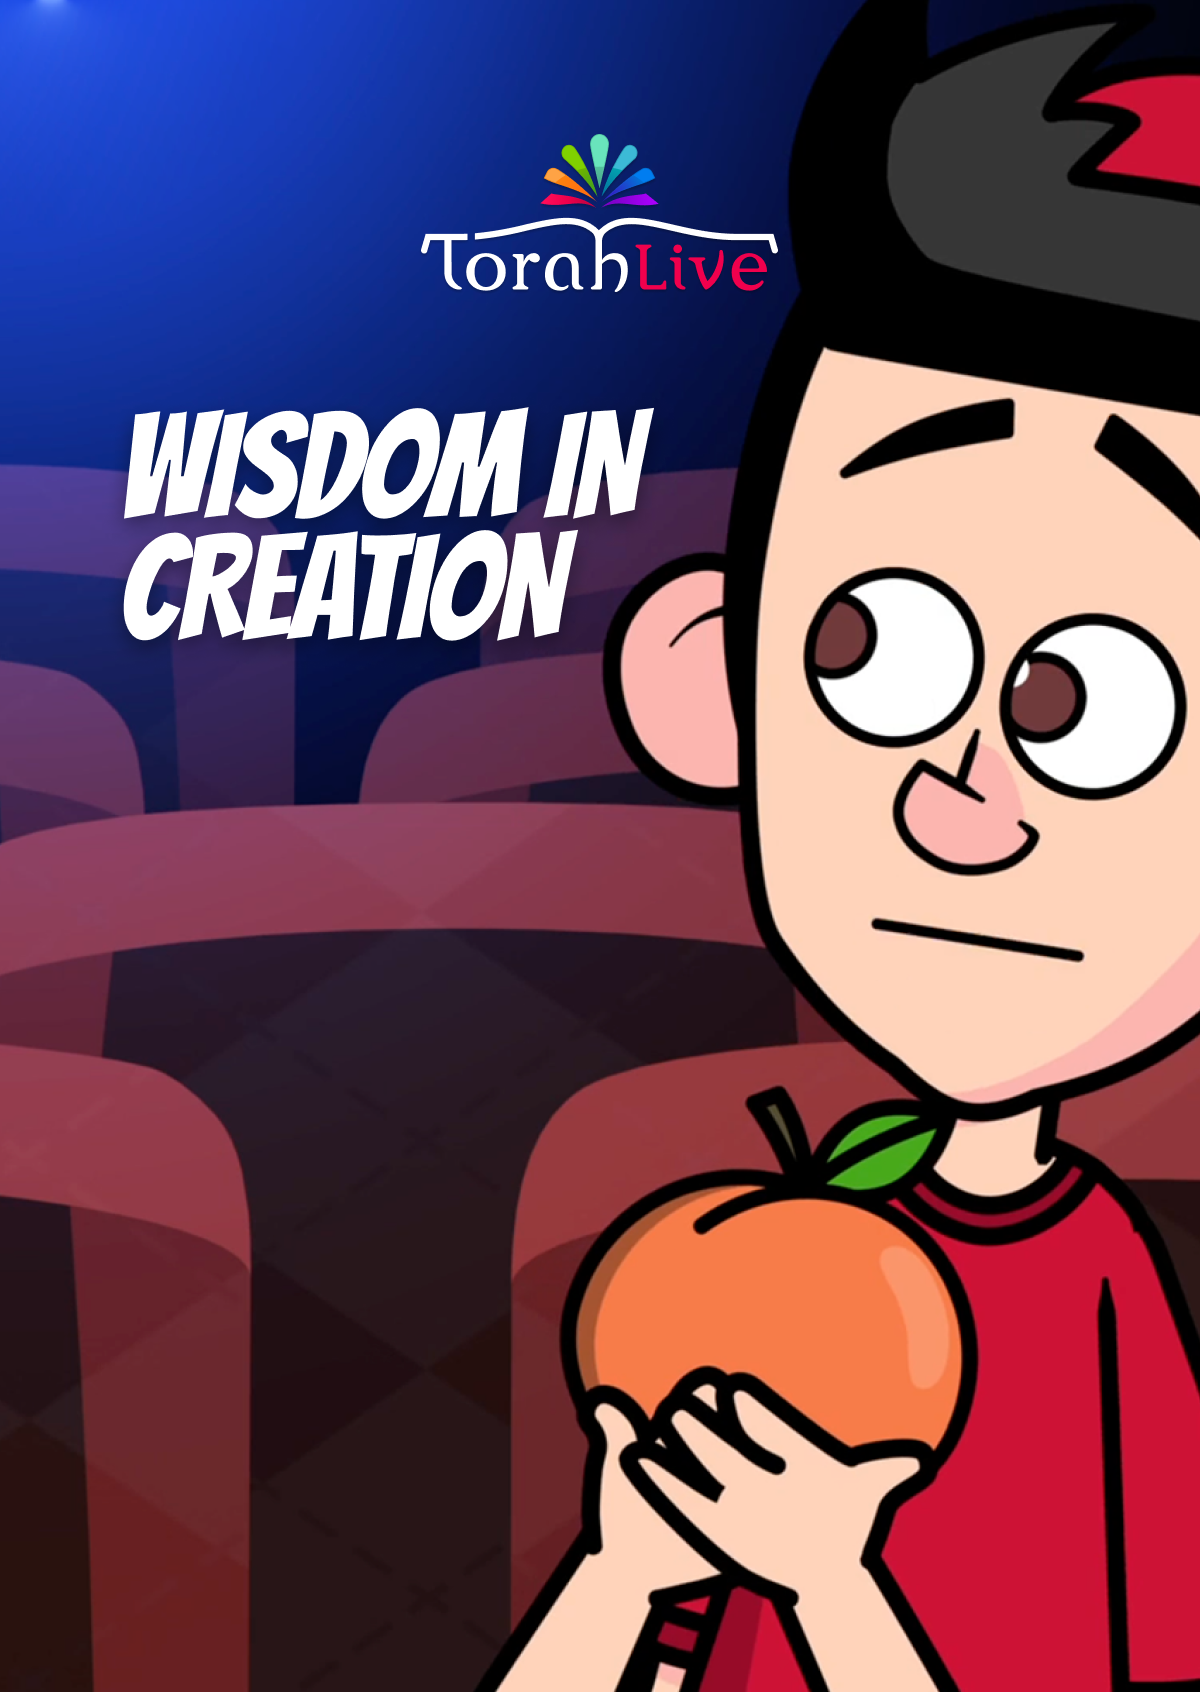 תורה חיה - חכמה בבריאה (וידאו)